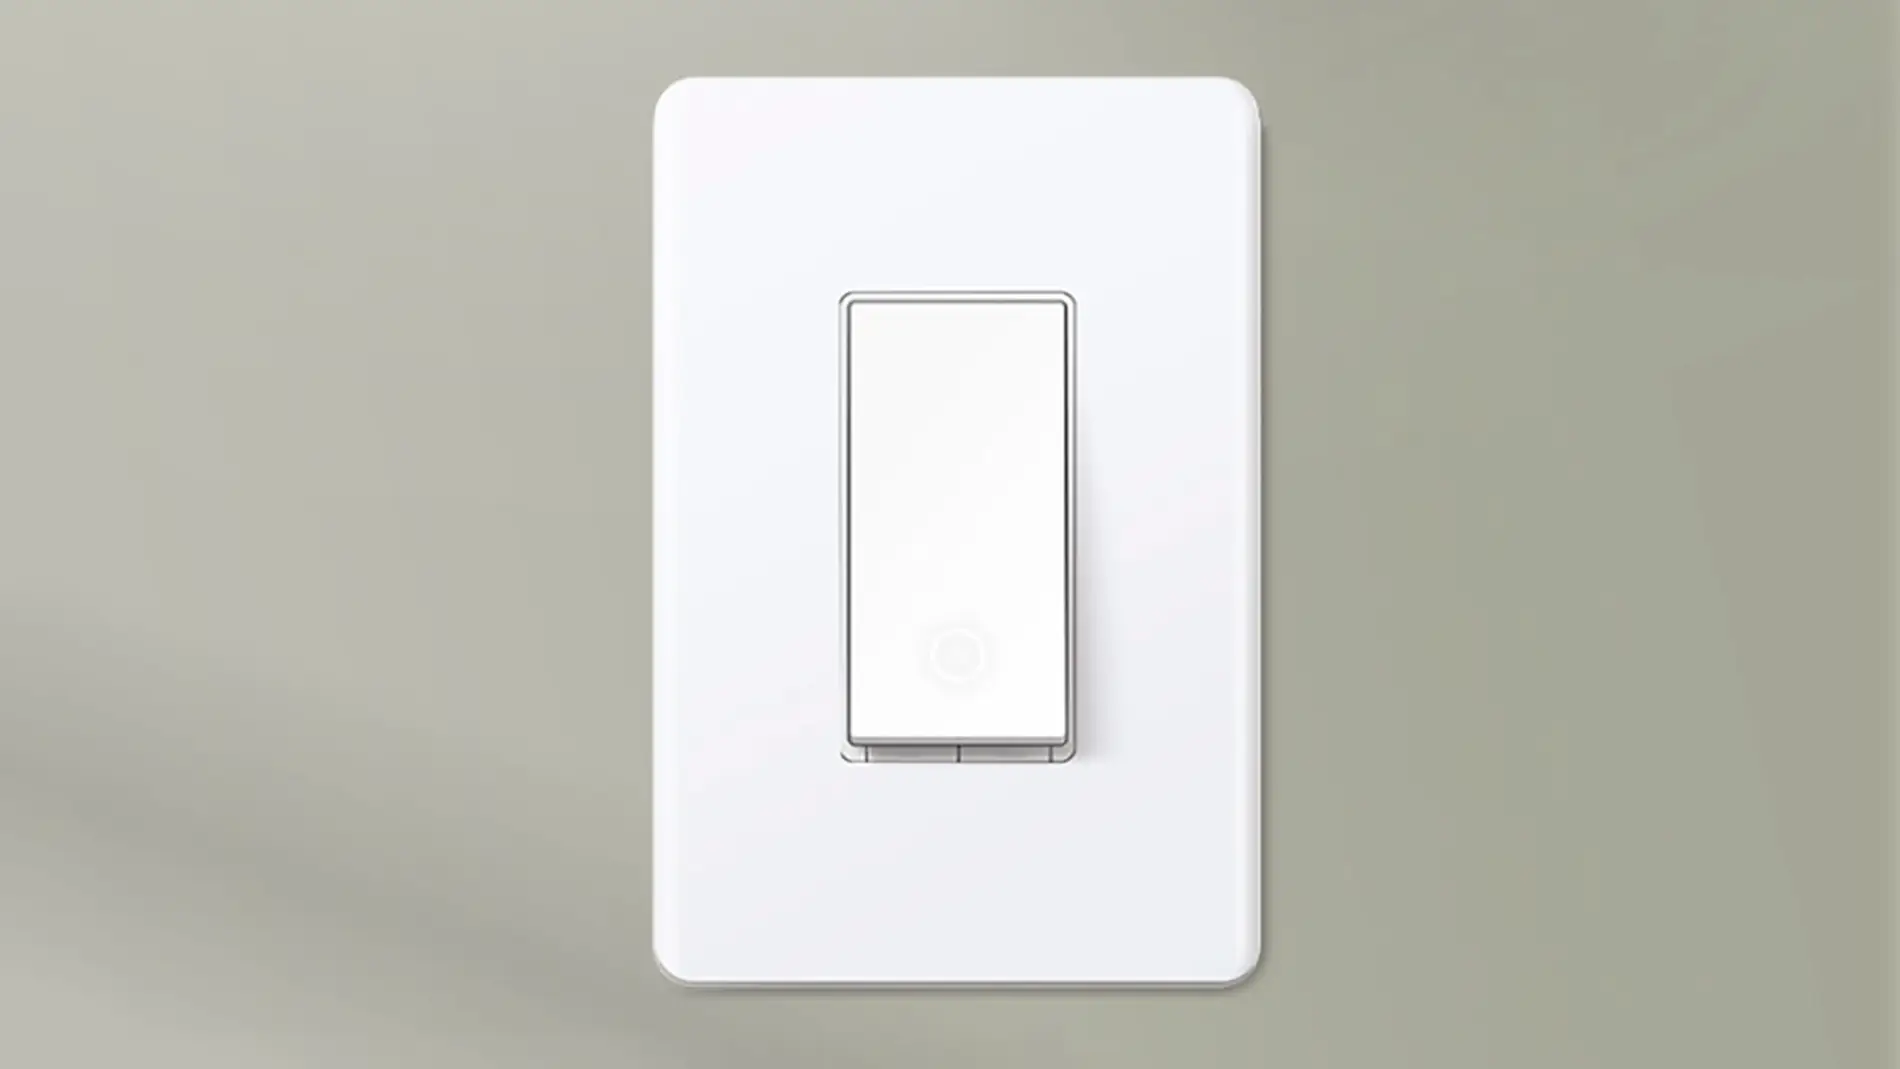 Interruptor de luz wifi sencillo blanco